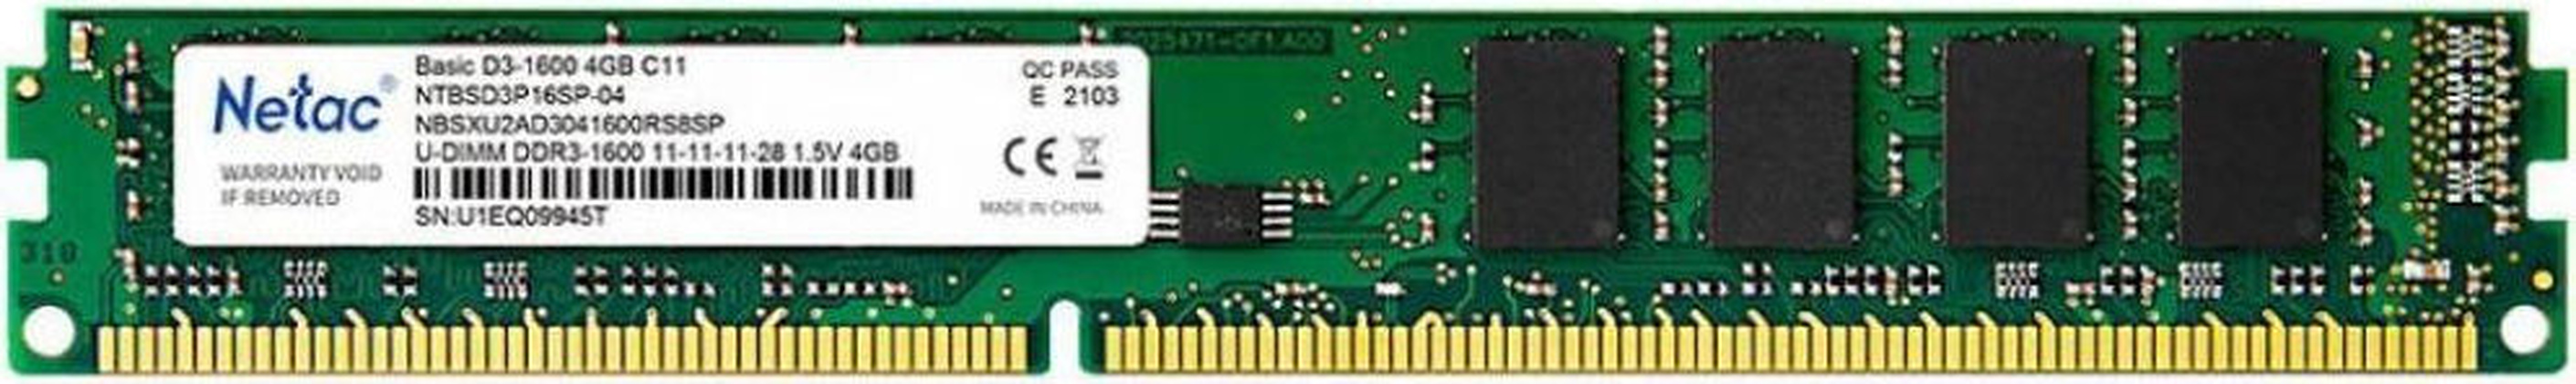 Модуль памяти DDR3 1600Mhz - 4Gb(1x4Gb) "Netac" [NTBSD3P16SP-04]